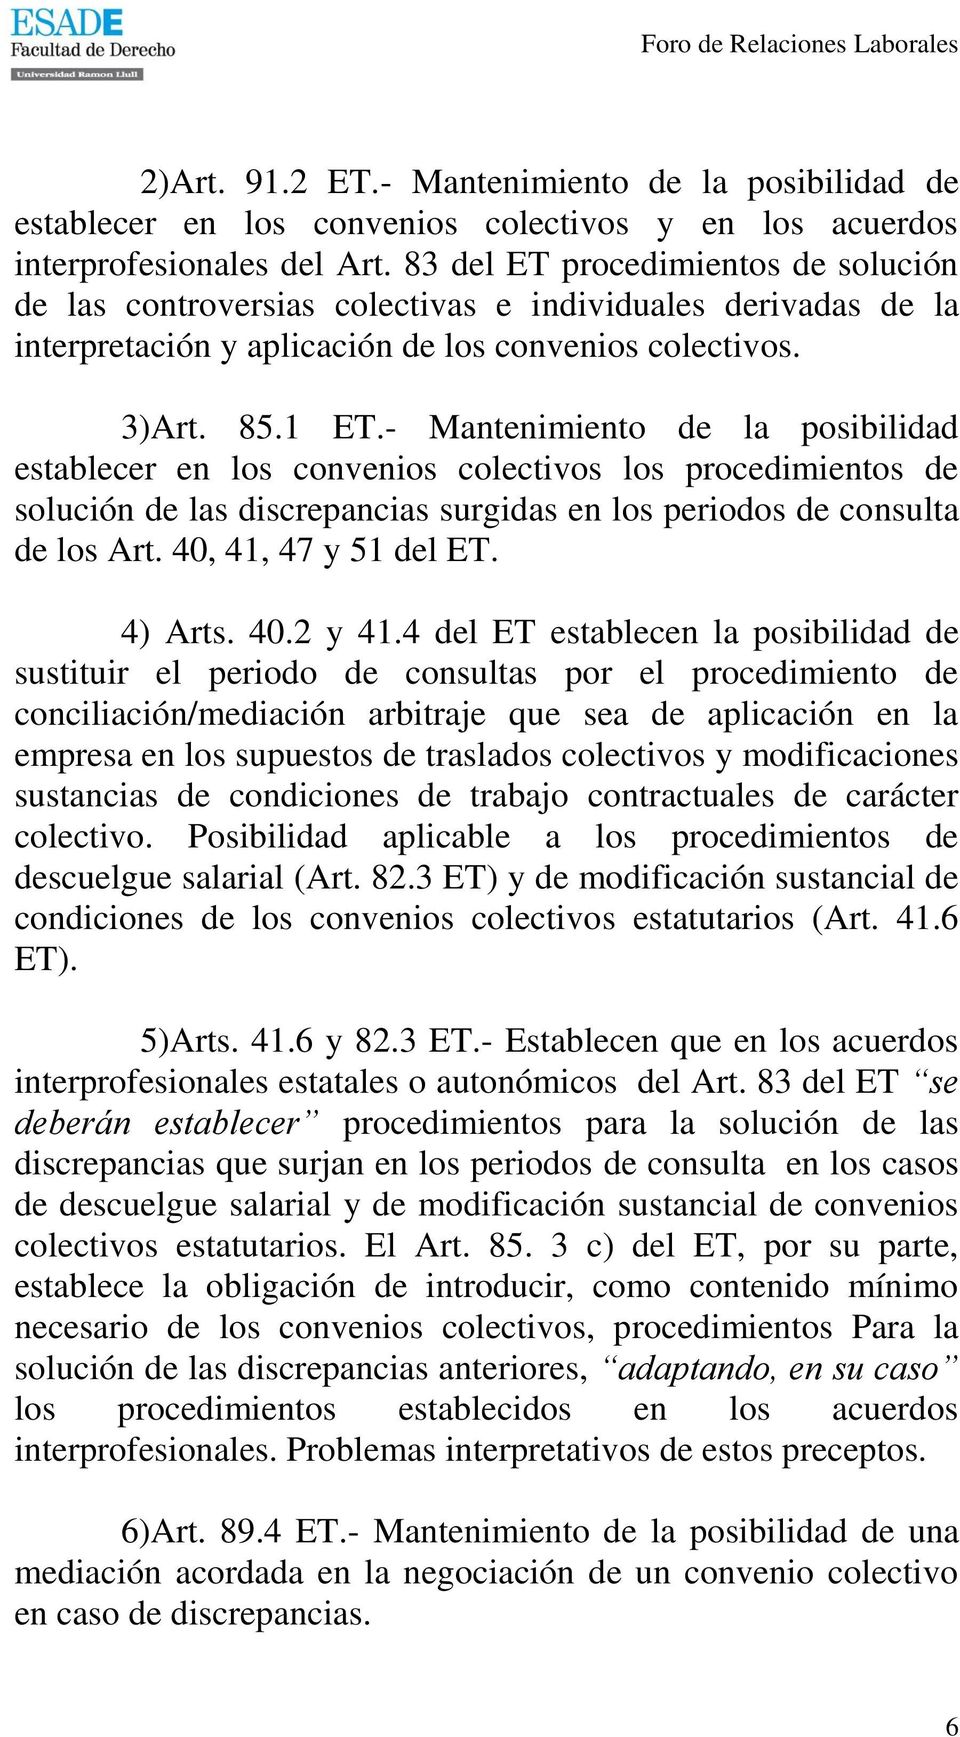 - Mantenimiento de la posibilidad establecer en los convenios colectivos los procedimientos de solución de las discrepancias surgidas en los periodos de consulta de los Art. 40, 41, 47 y 51 del ET.